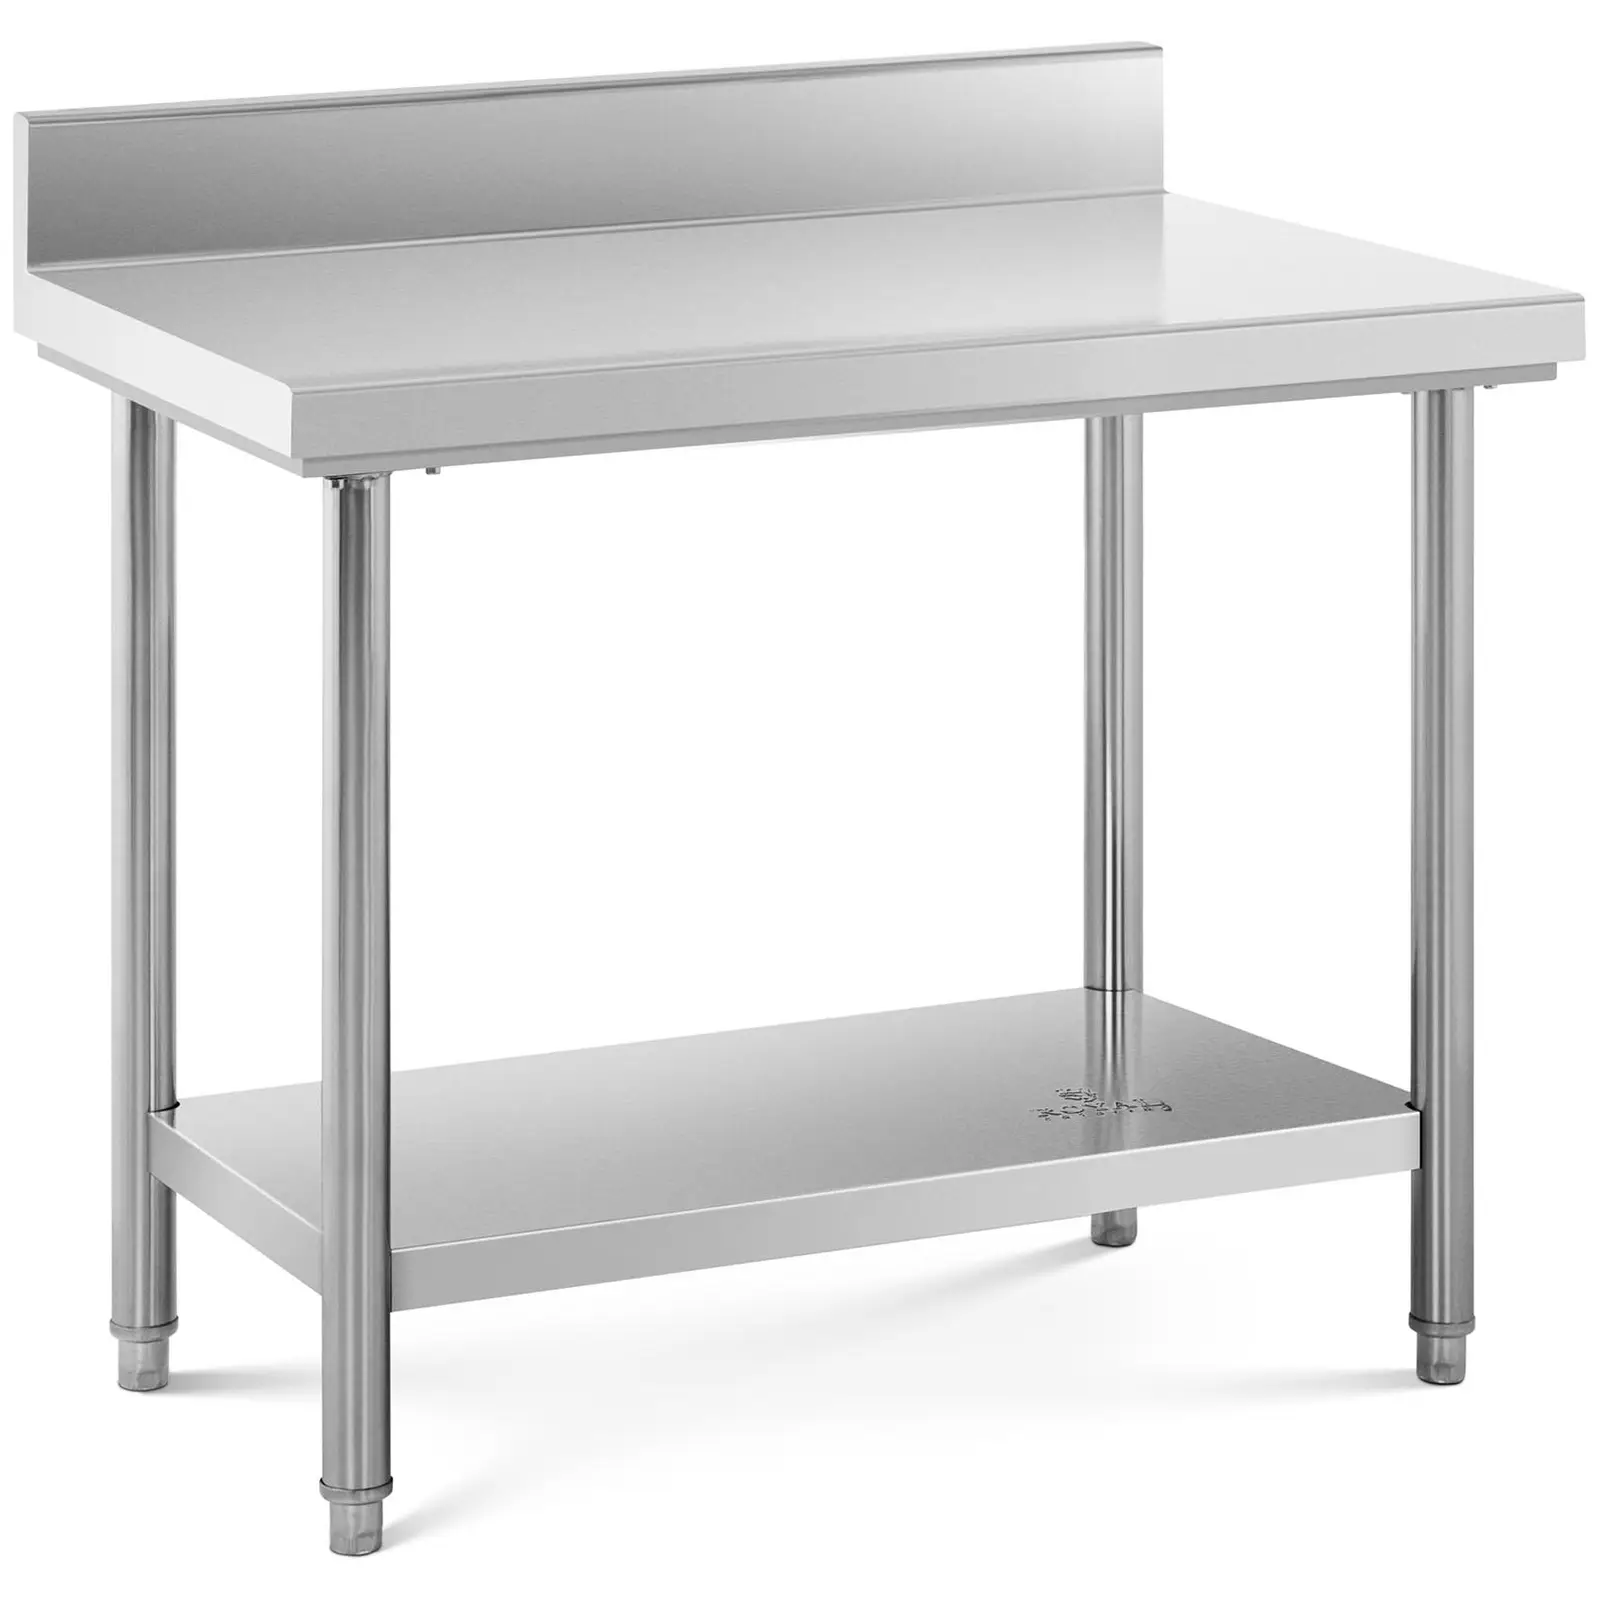 Pracovní stůl z ušlechtilé oceli 100 x 60 cm s lemem nosnost 114 kg - Pracovní stoly Royal Catering